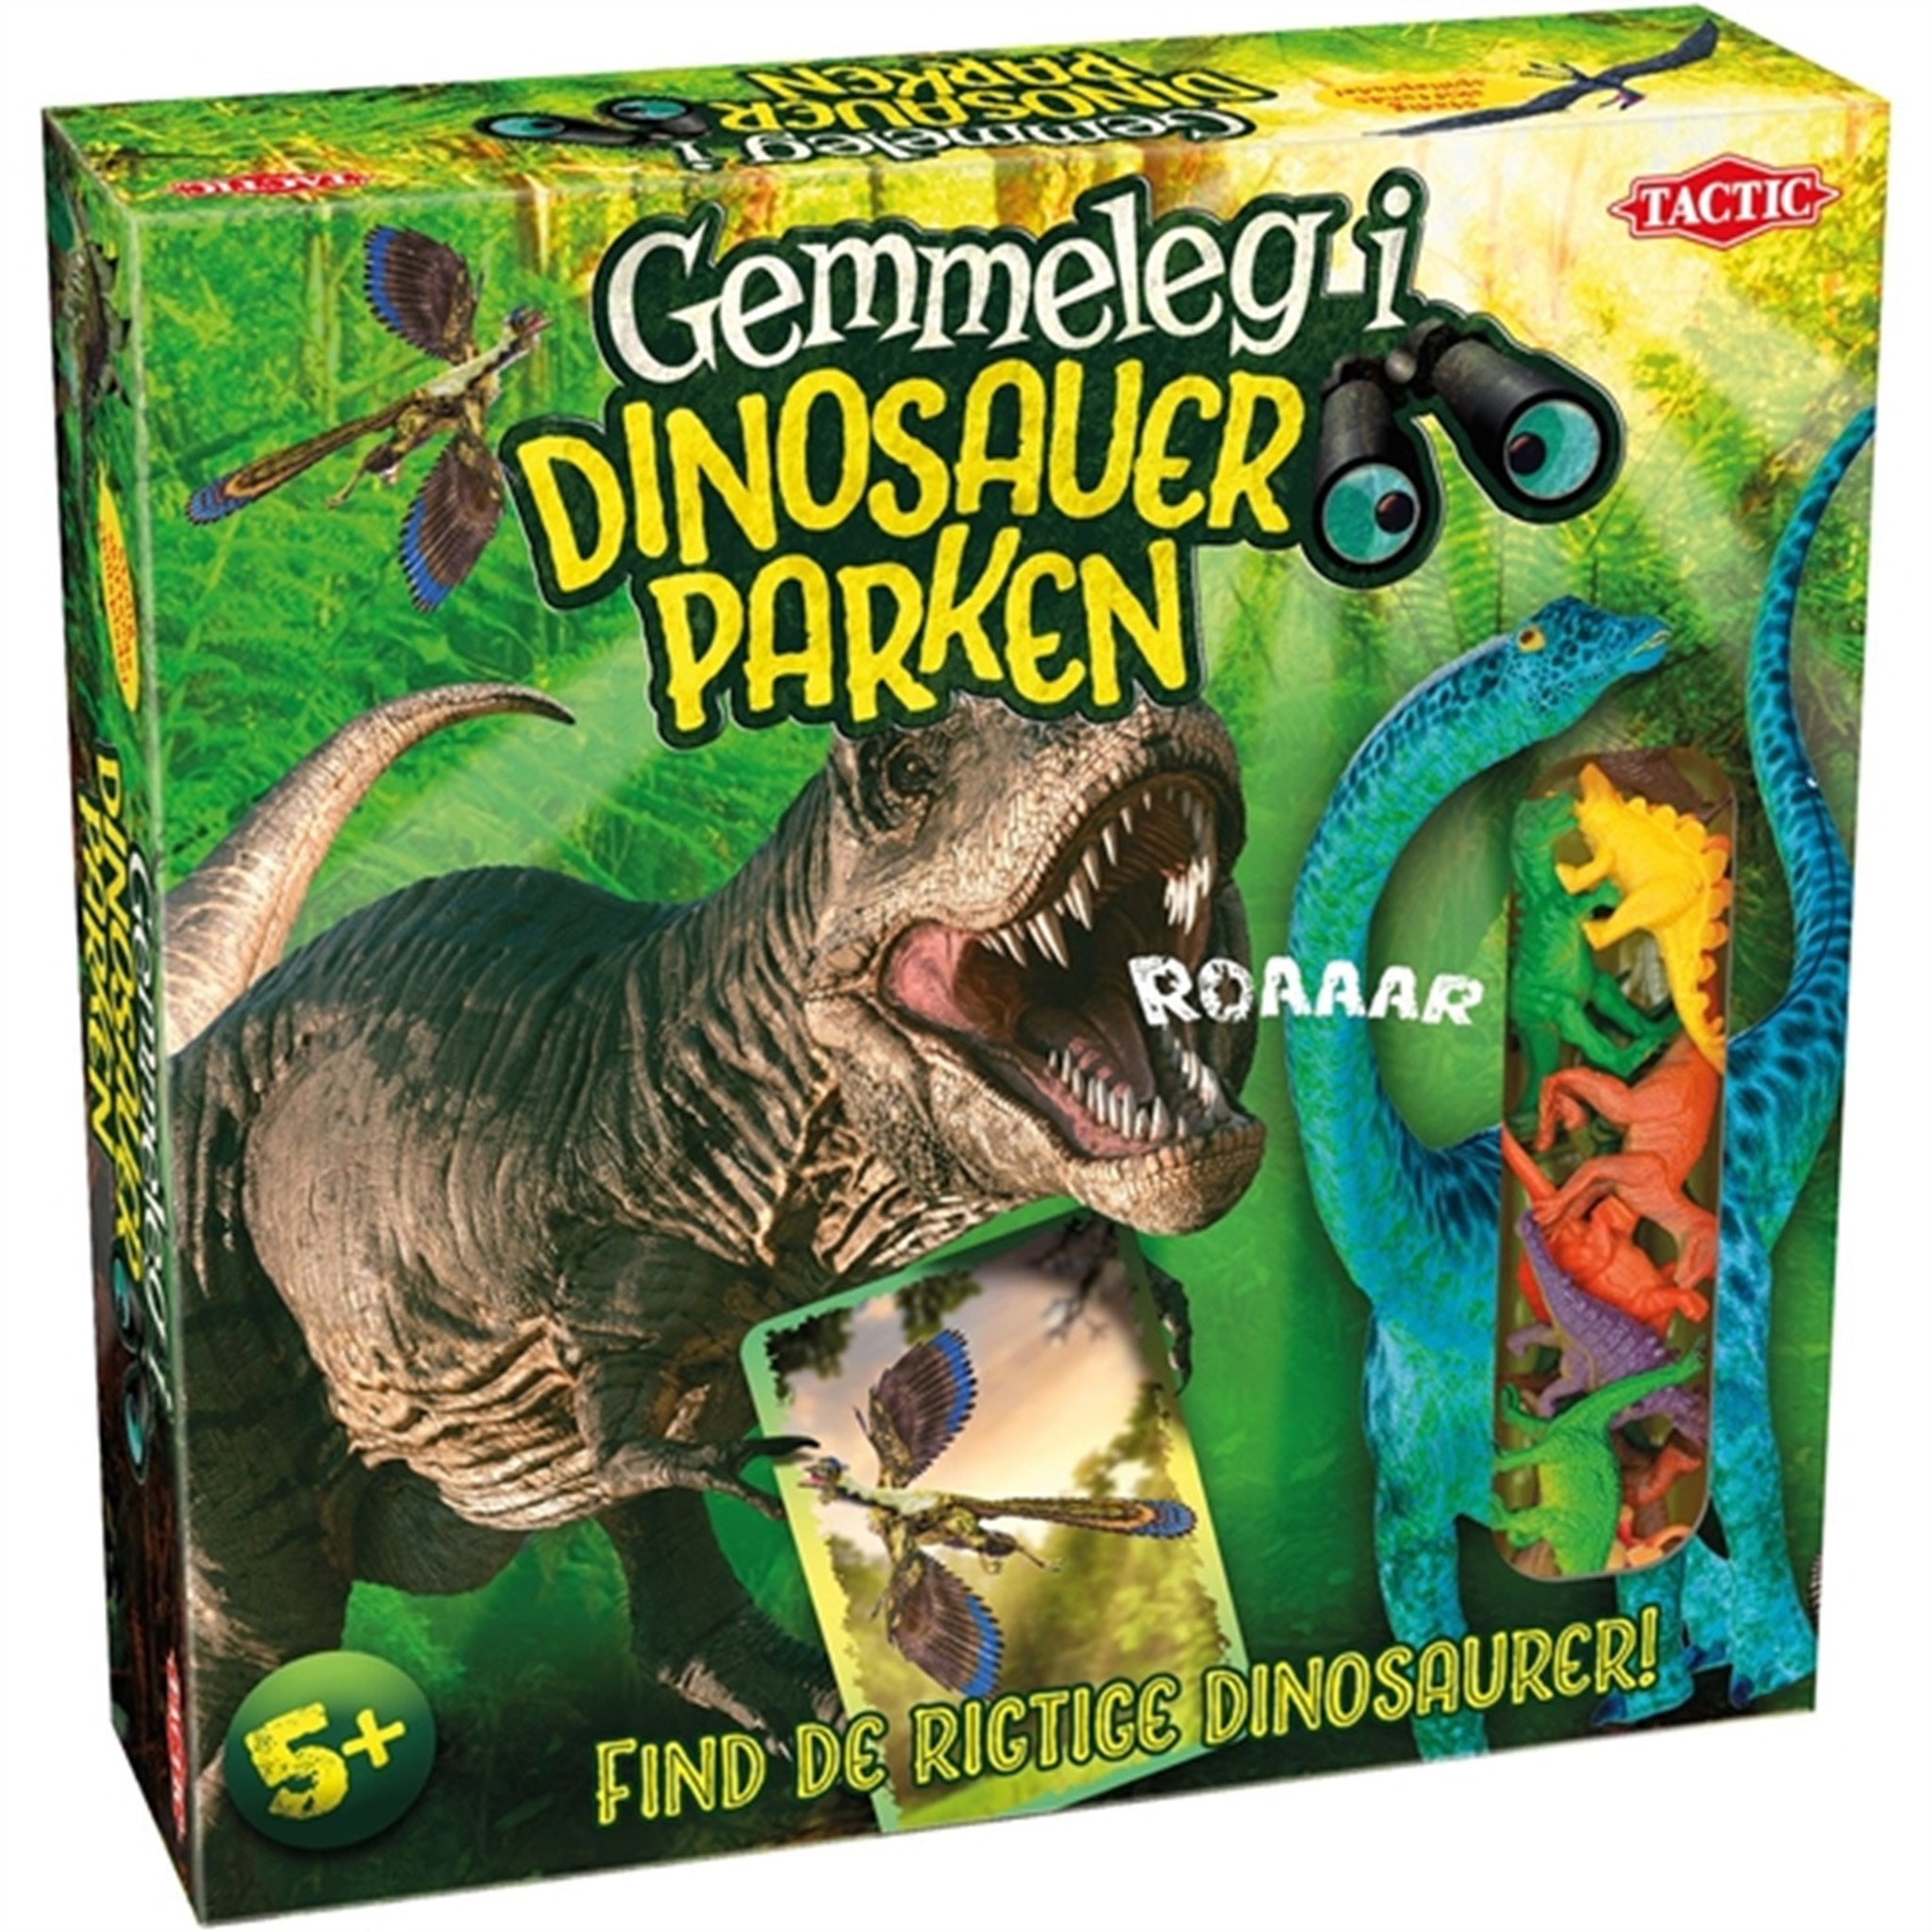 Tactic Games Gemmeleg i Dinosauer Parken